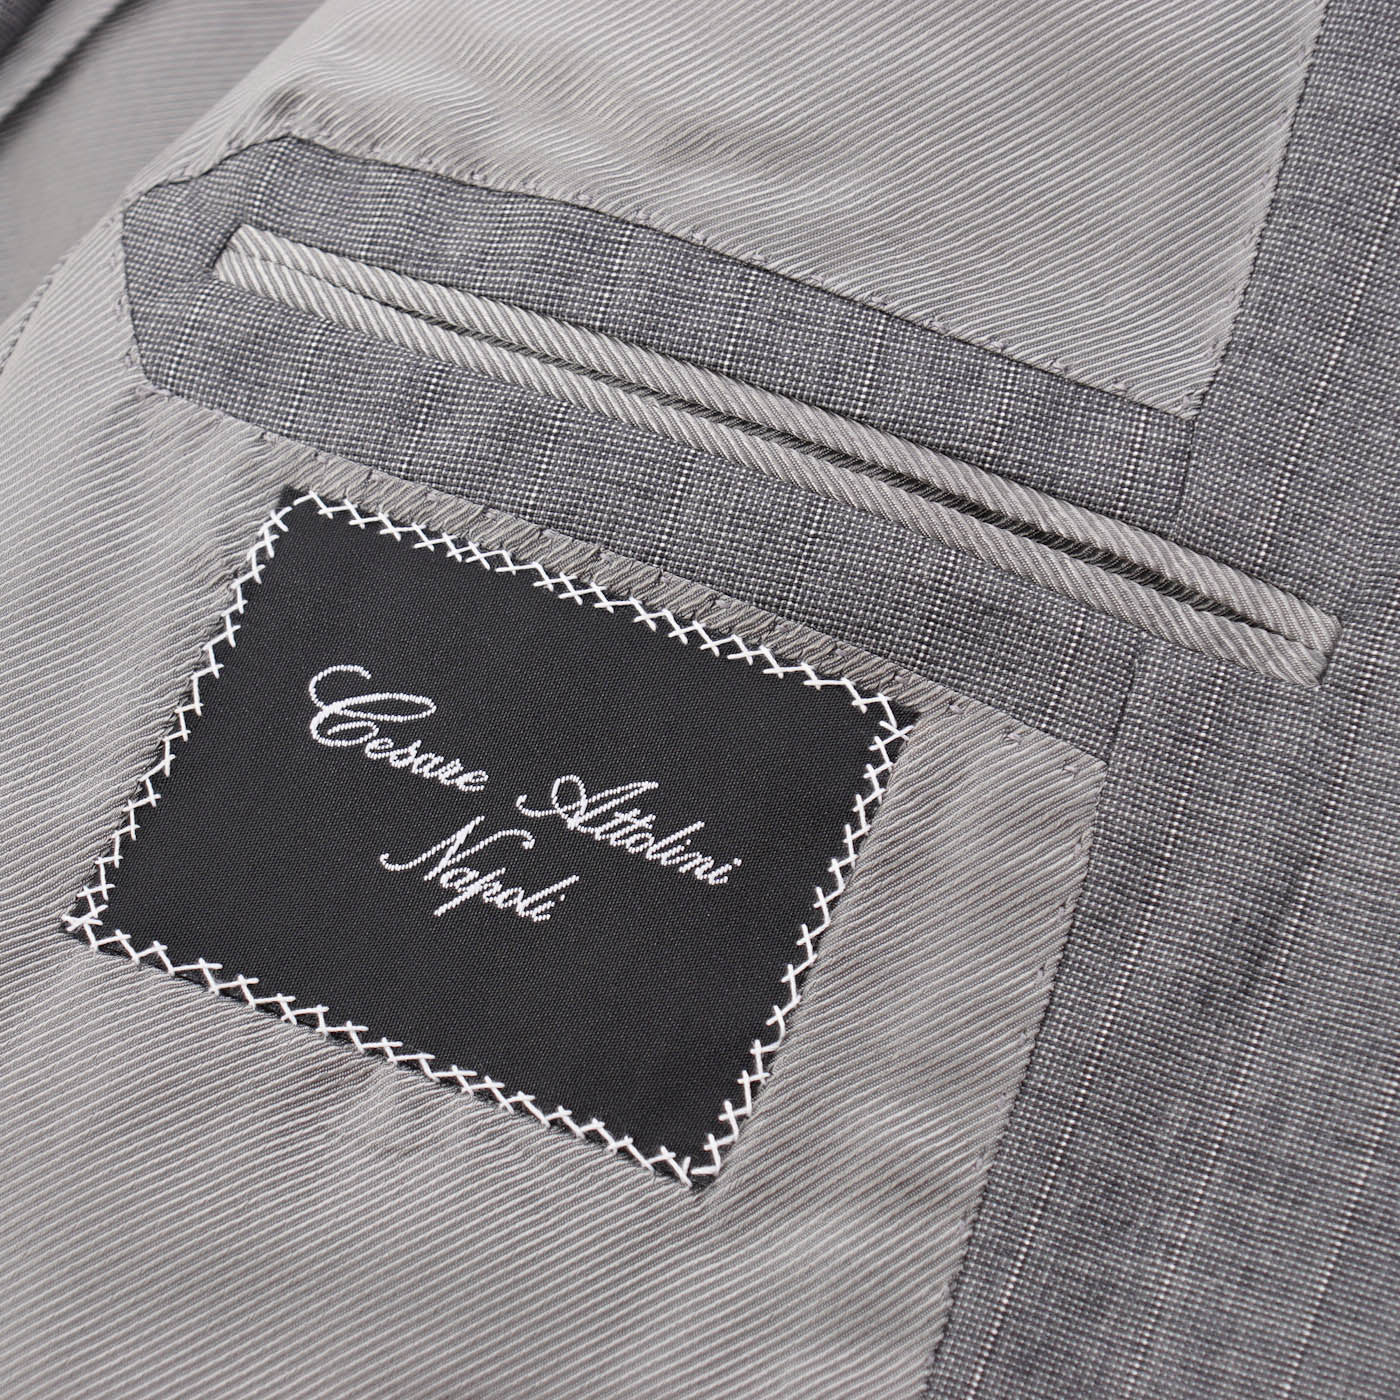 Cesare Attolini Lighter Gray Striped Wool Suit - Top Shelf Apparel